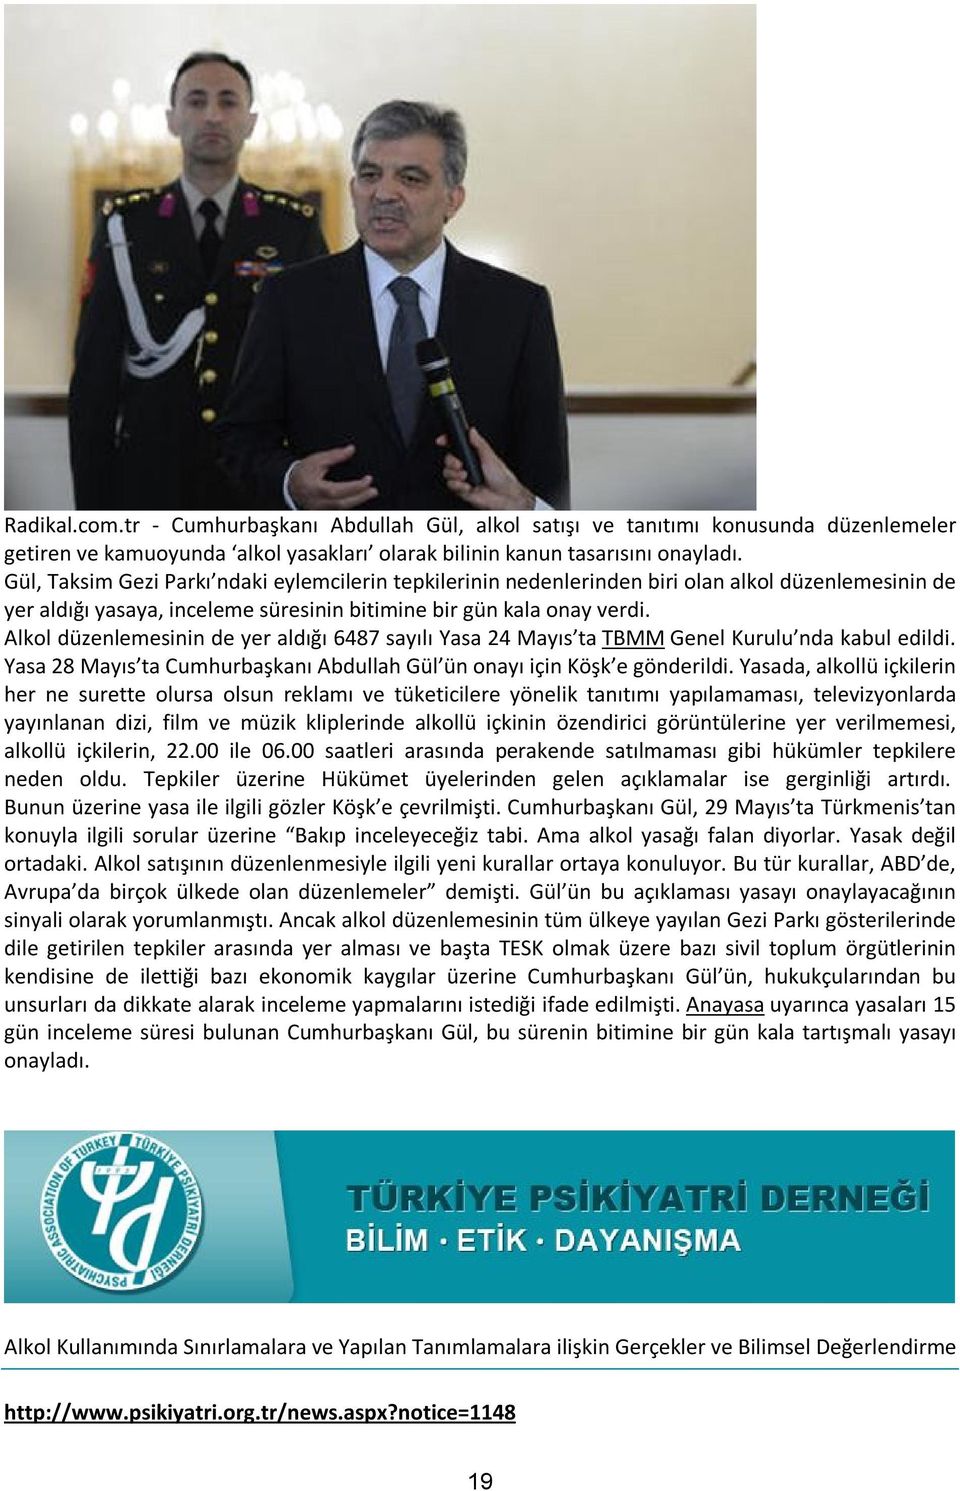 Alkol düzenlemesinin de yer aldığı 6487 sayılı Yasa 24 Mayıs ta TBMM Genel Kurulu nda kabul edildi. Yasa 28 Mayıs ta Cumhurbaşkanı Abdullah Gül ün onayı için Köşk e gönderildi.